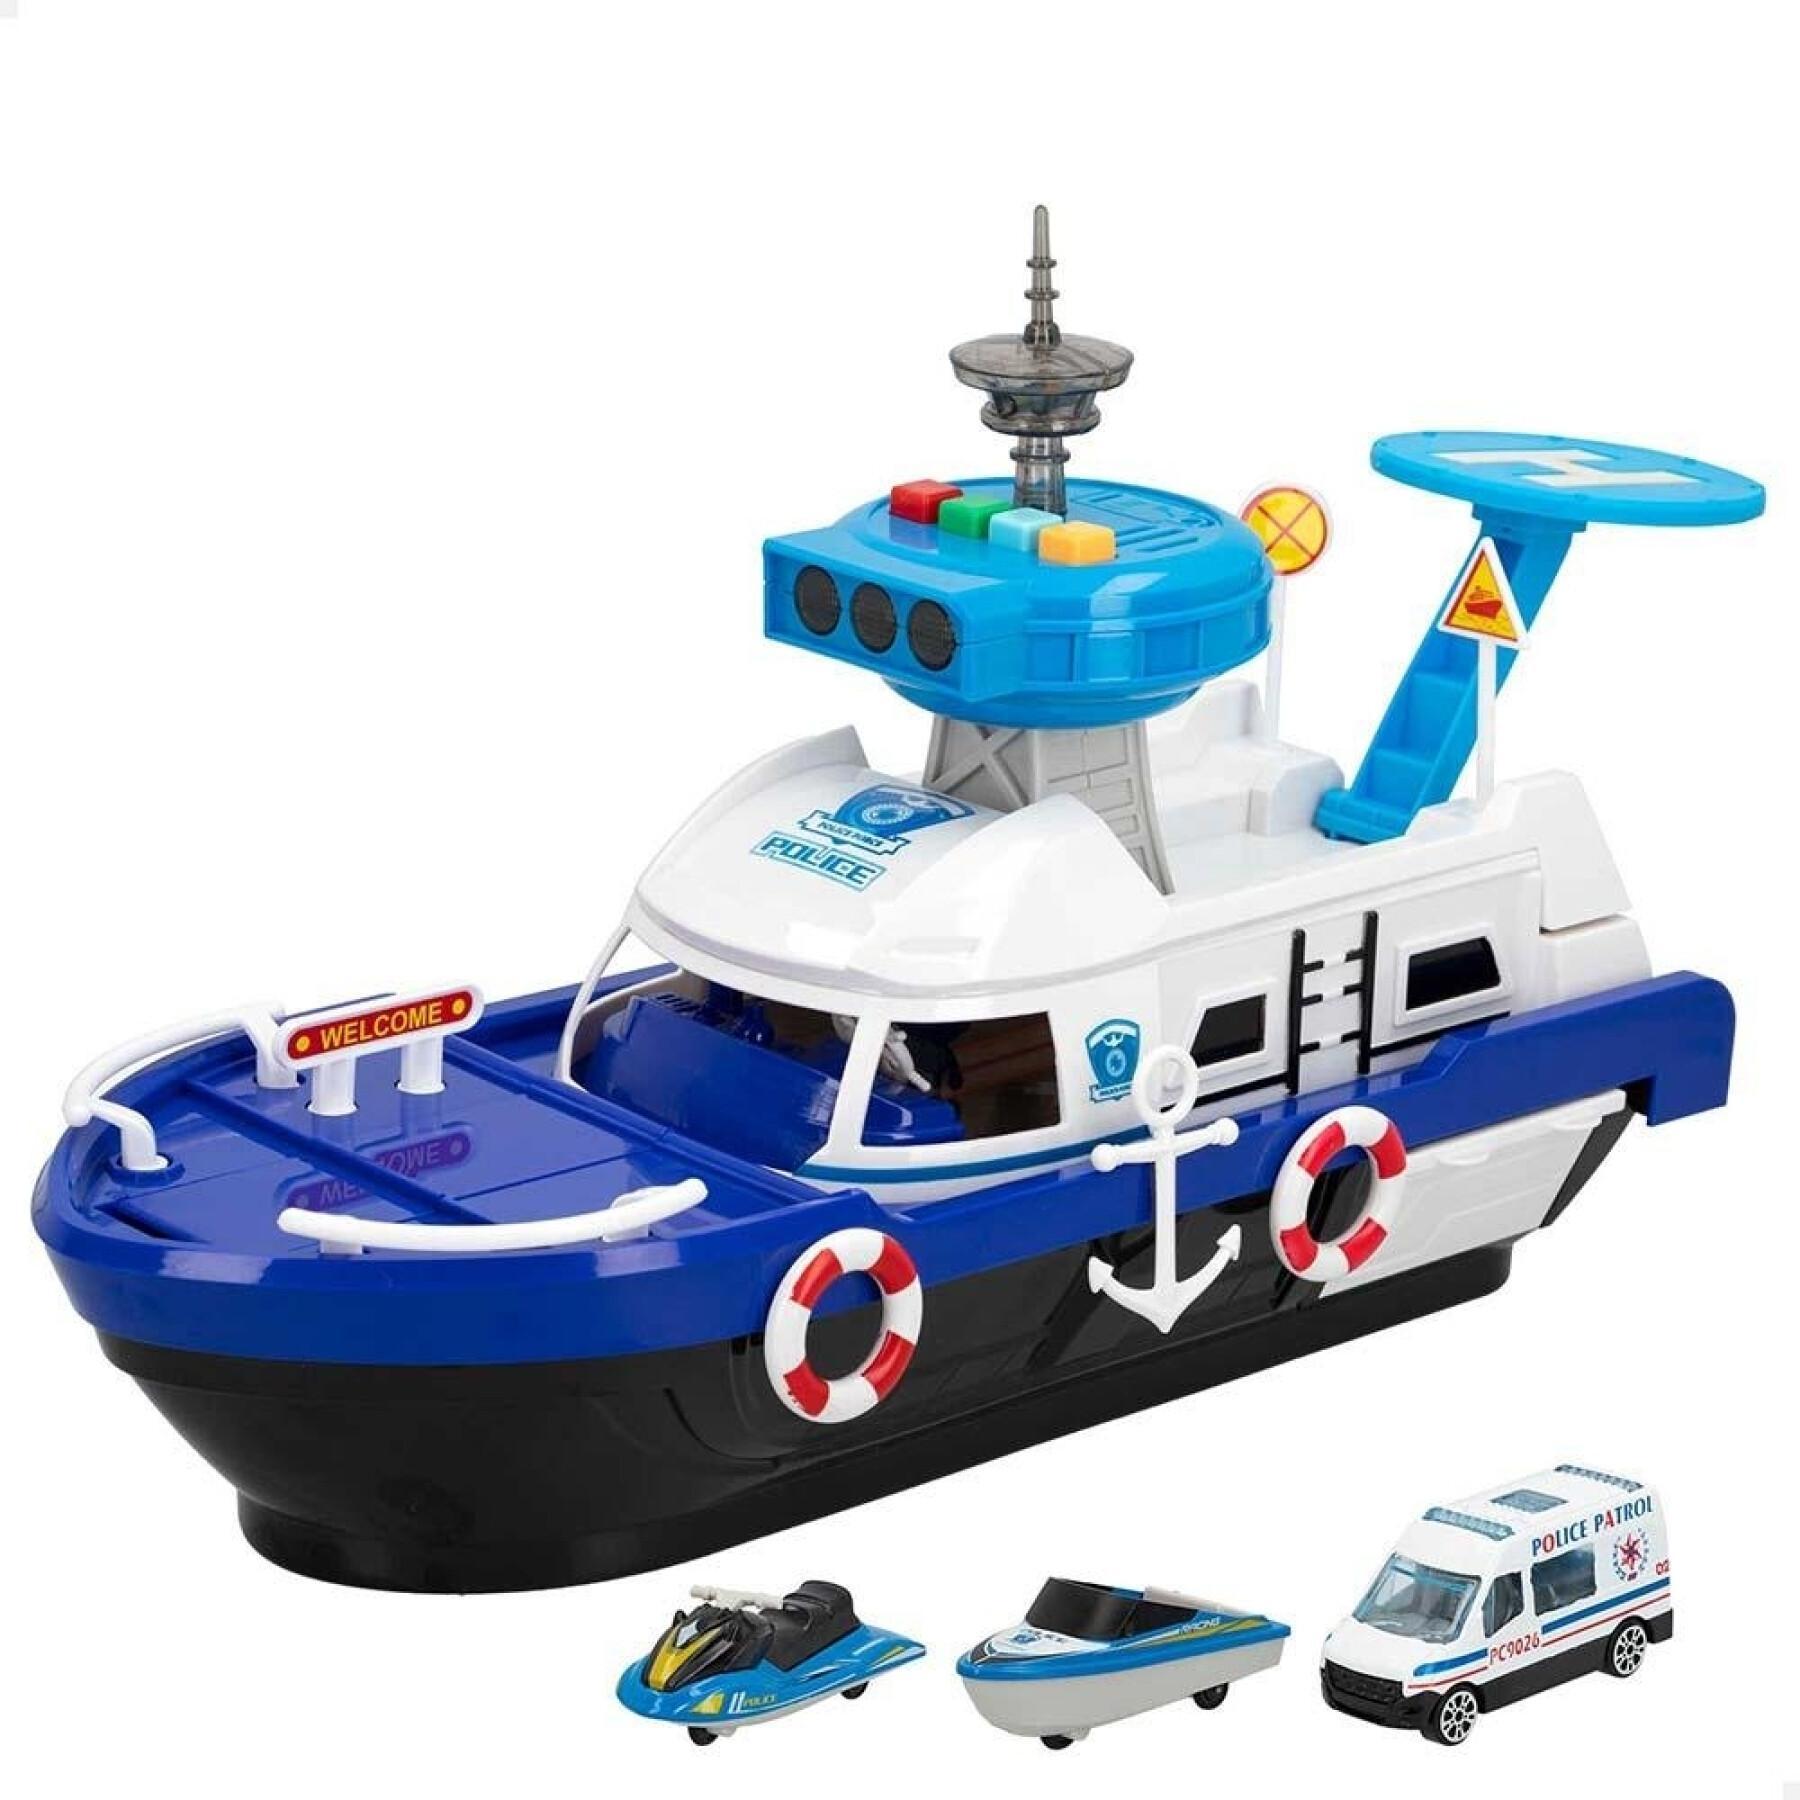 Police boat CB Toys